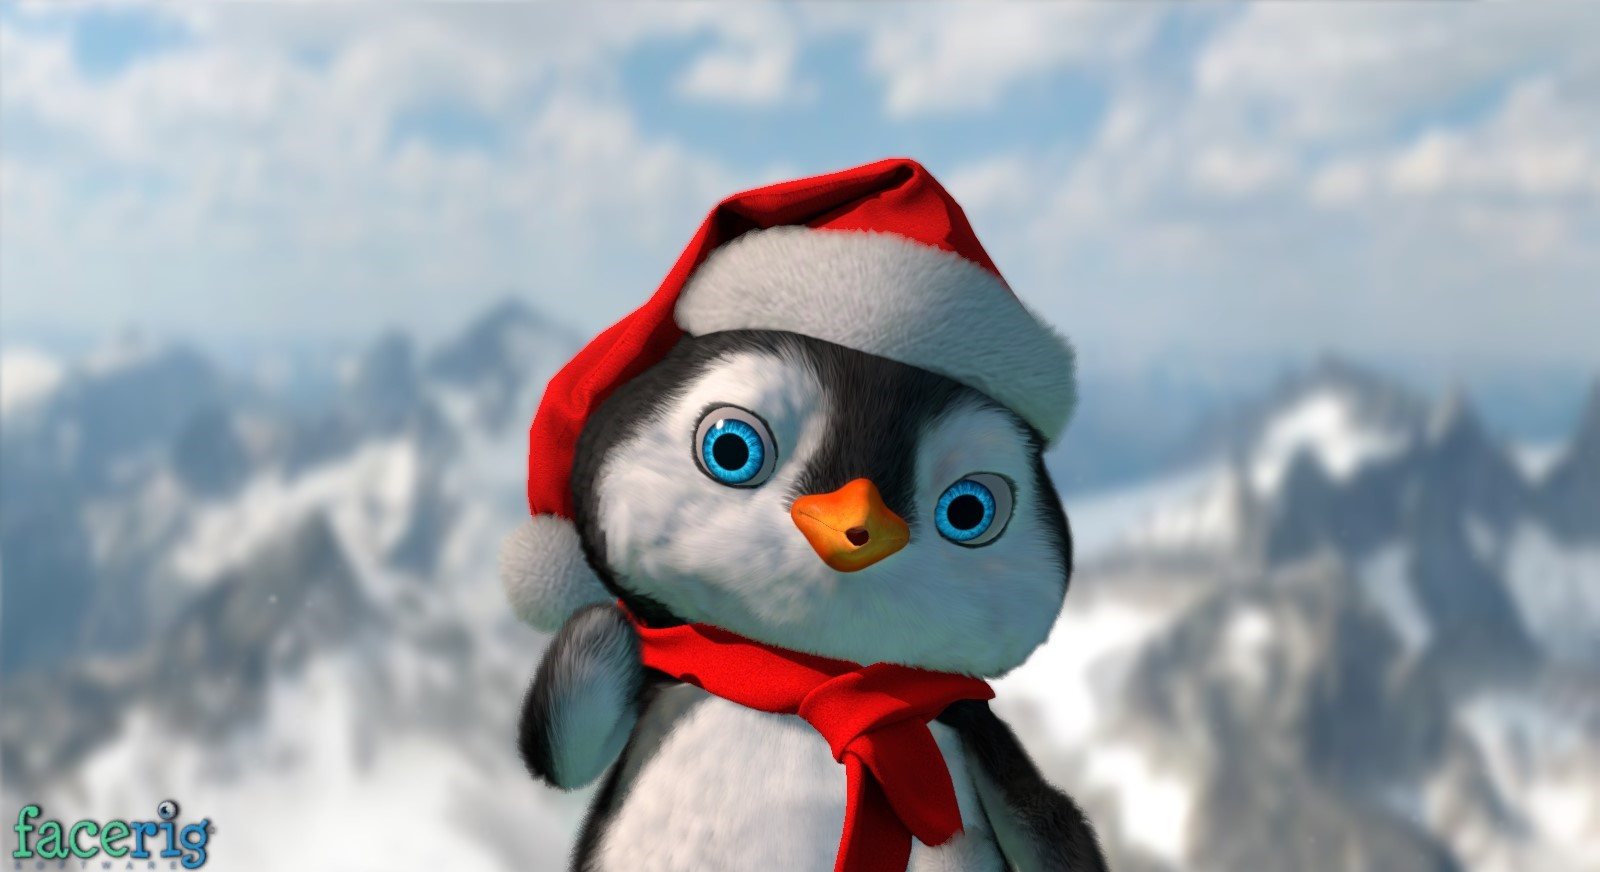 FaceRig - Winter Holidays Avatars 2015 DLC Steam CD Key 2.71 usd